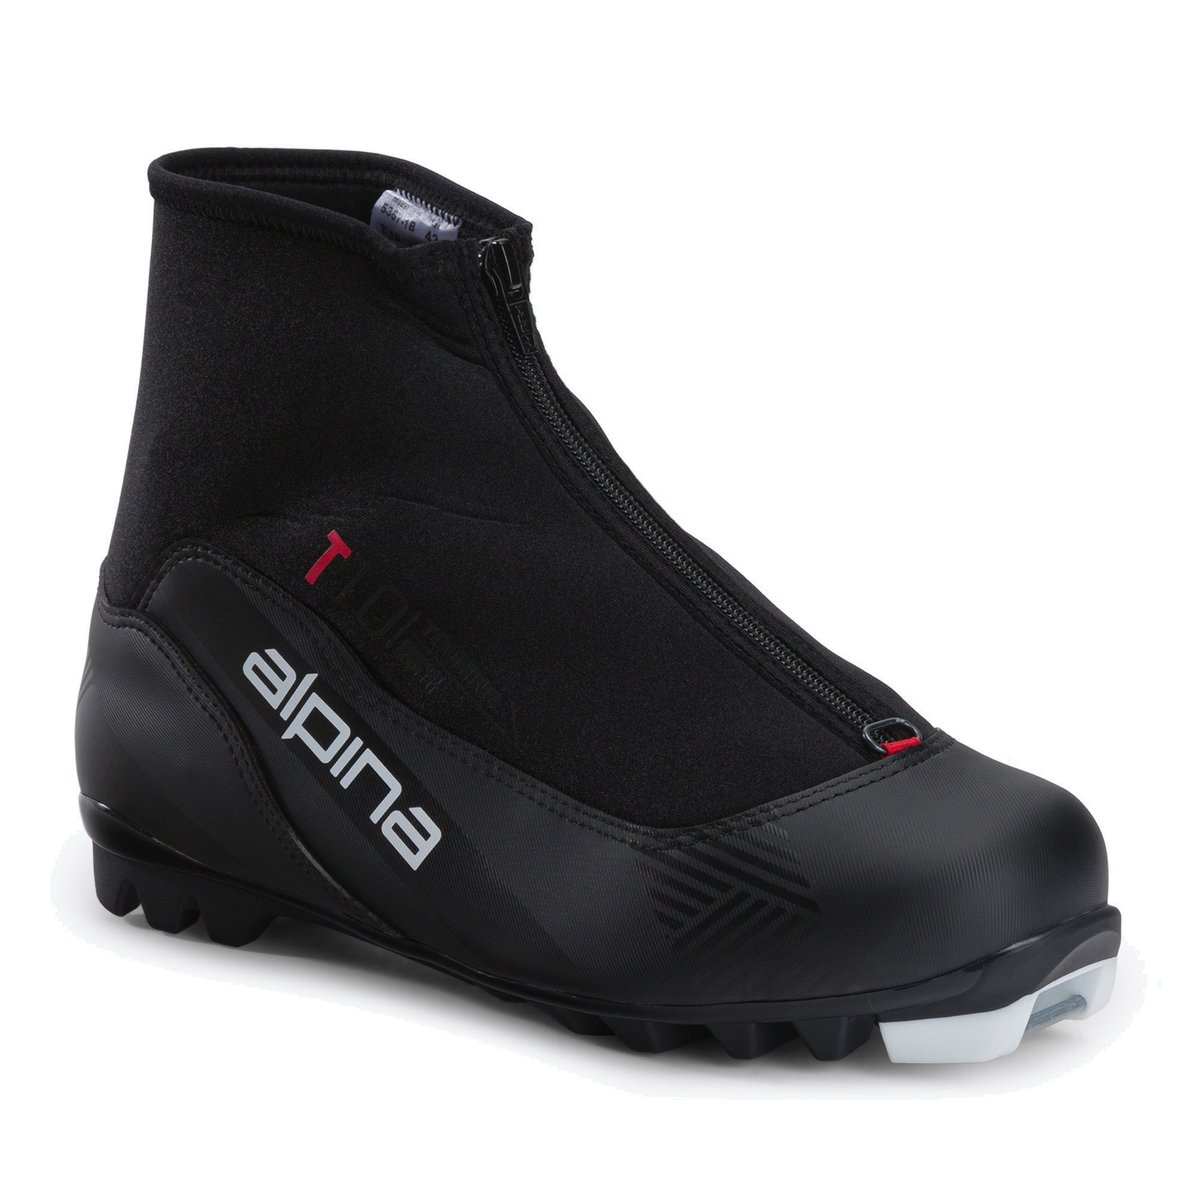 Buty narciarskie biegowe męskie Alpina T 10 czarno-czerwone 5357-1  45 eu